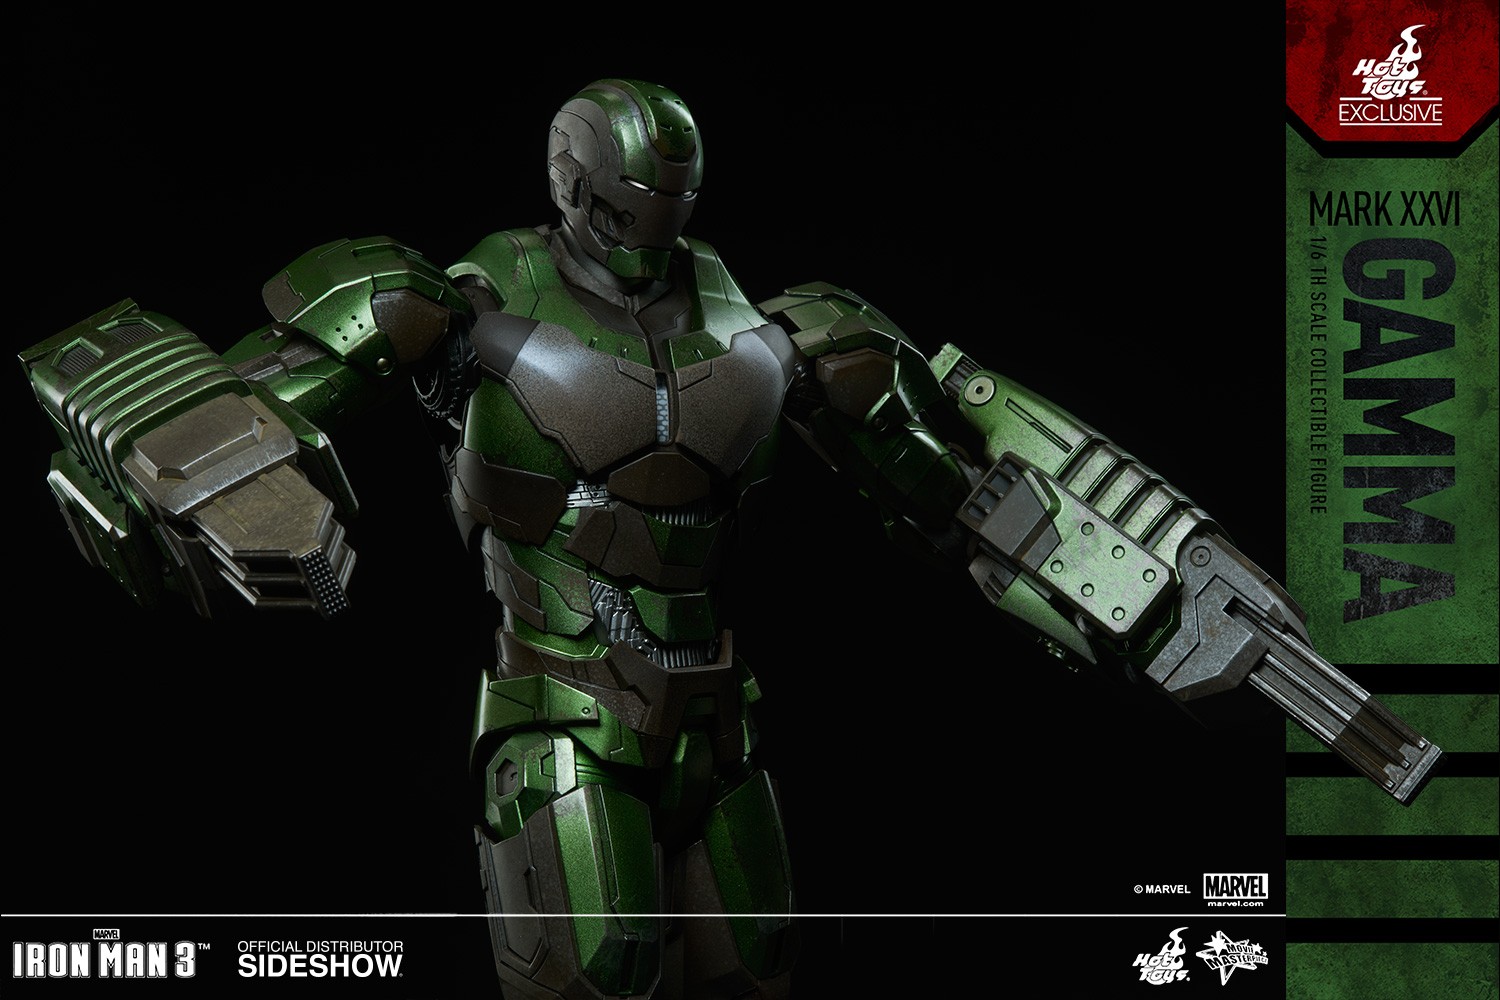 Iron Man Mark XXVI - Gamma Exclusive Edition (Prototype Shown) View 6